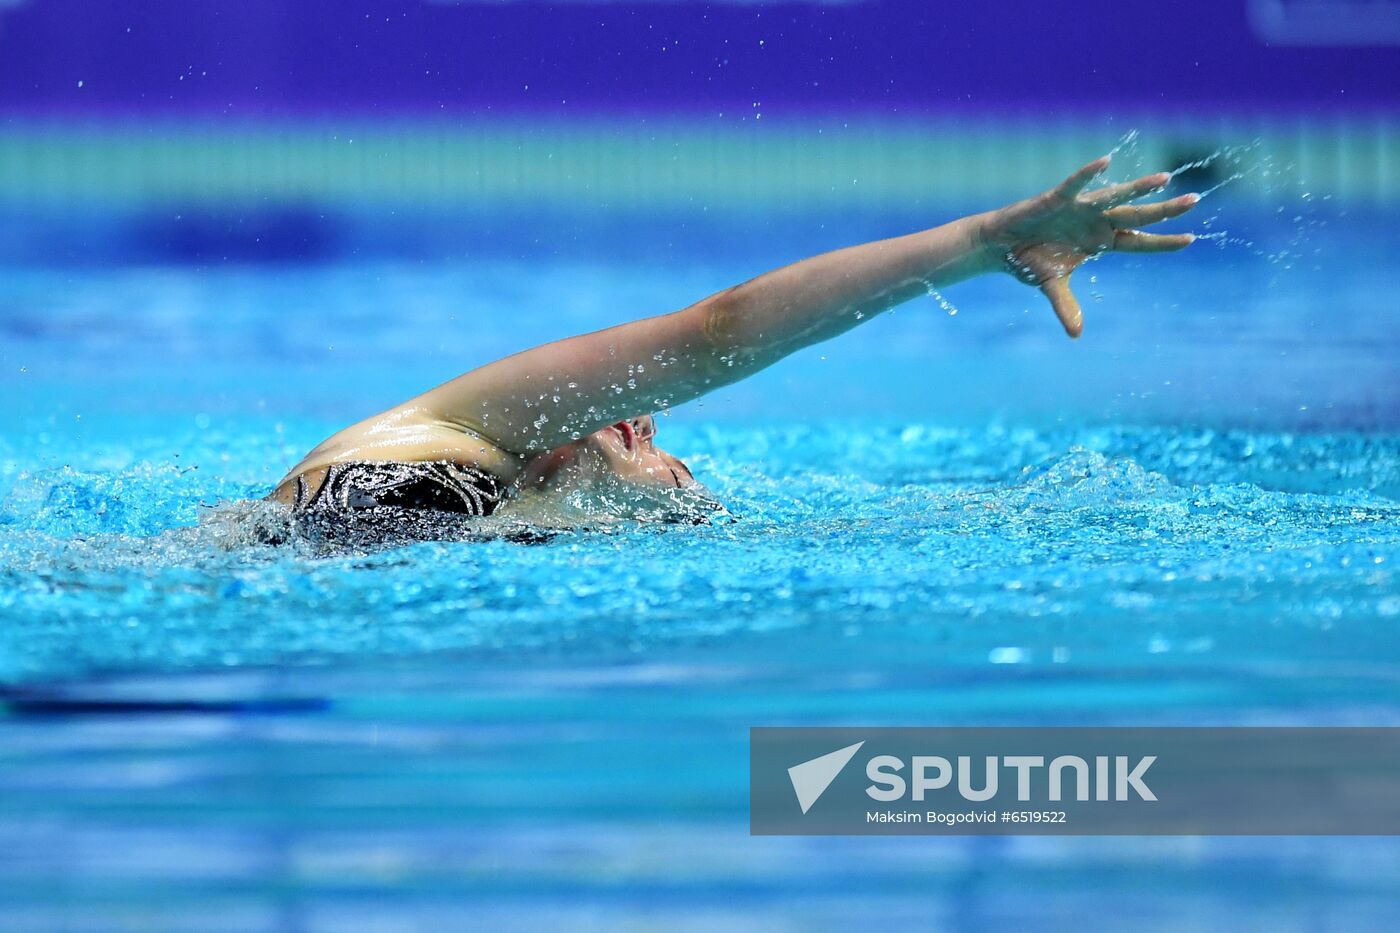 Russia Artistic Swimming World Series Solo Technical